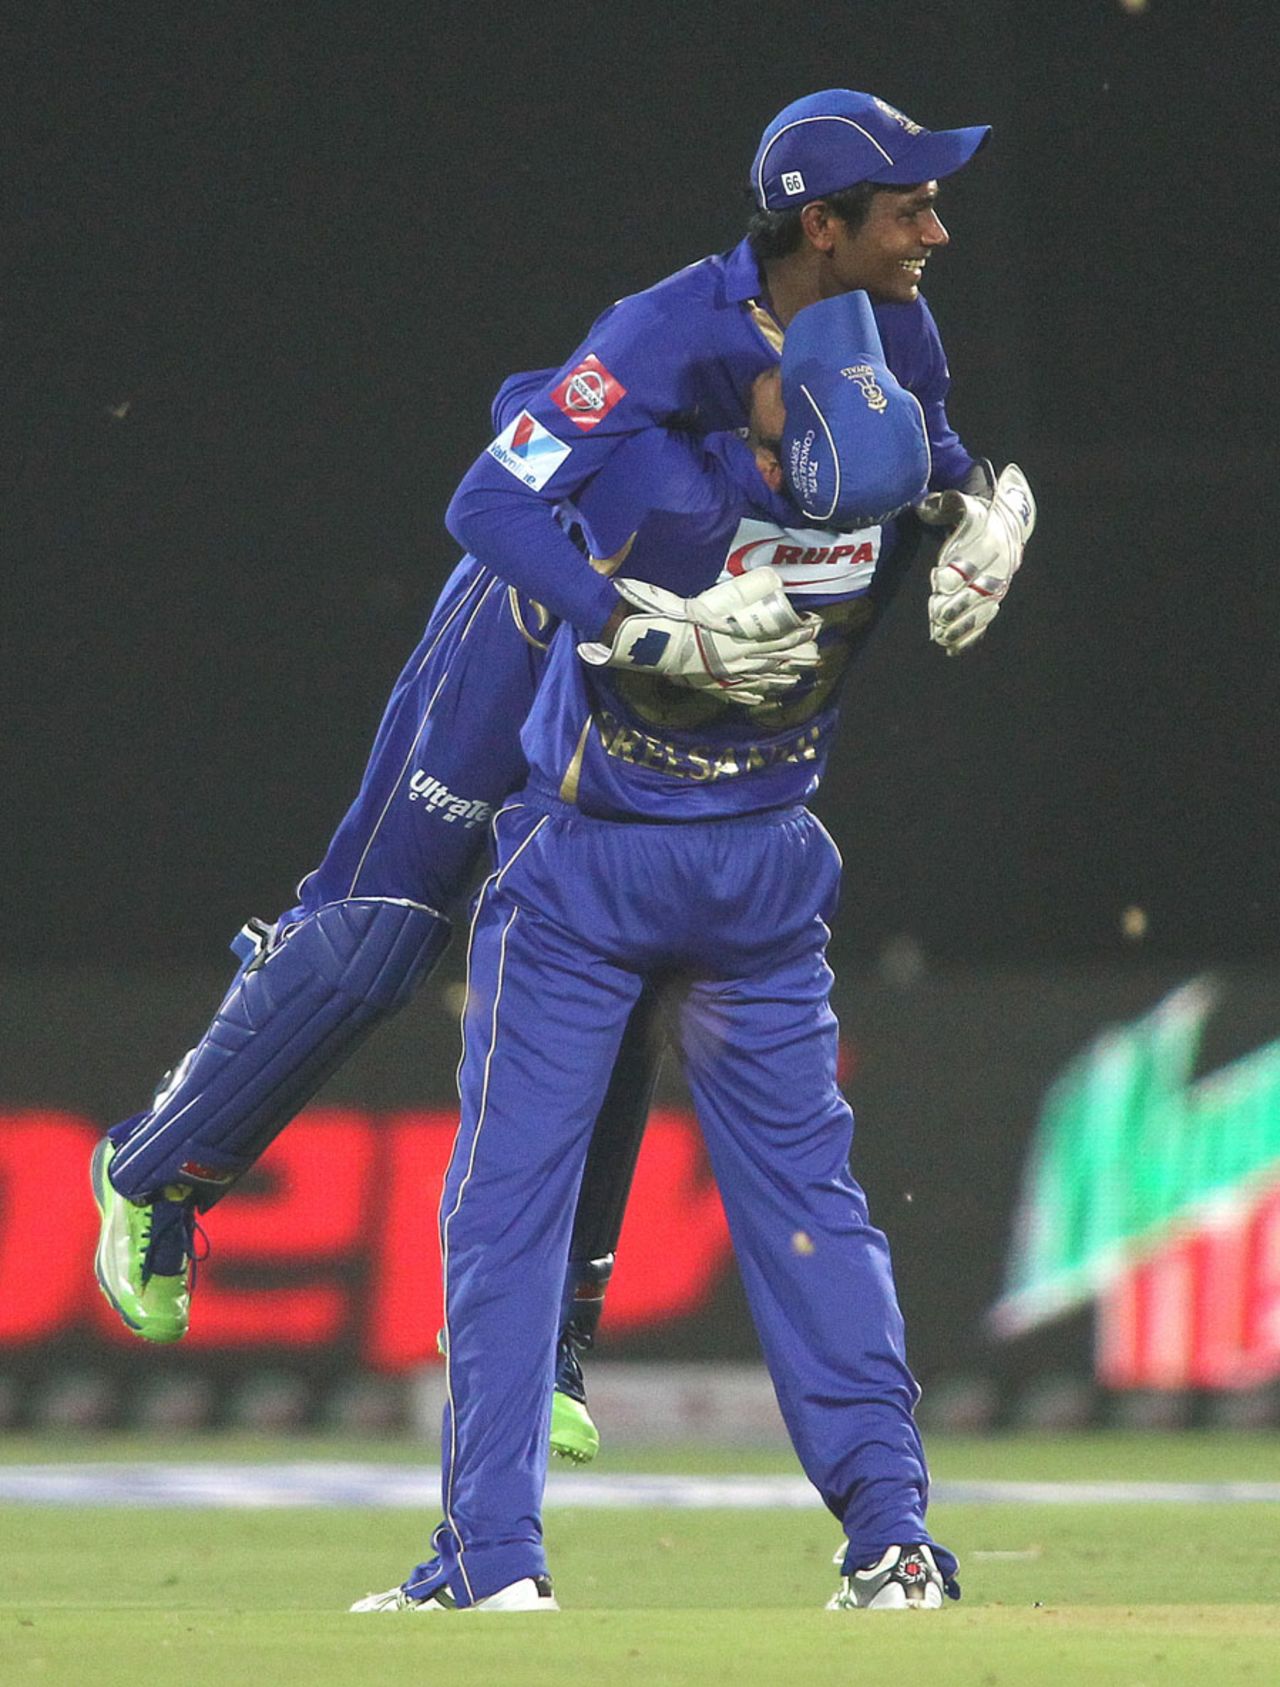 Sanju Samson celebrates after taking a catch, Rajasthan Royals v Kings XI Punjab, IPL 2013, Jaipur, April 14, 2013